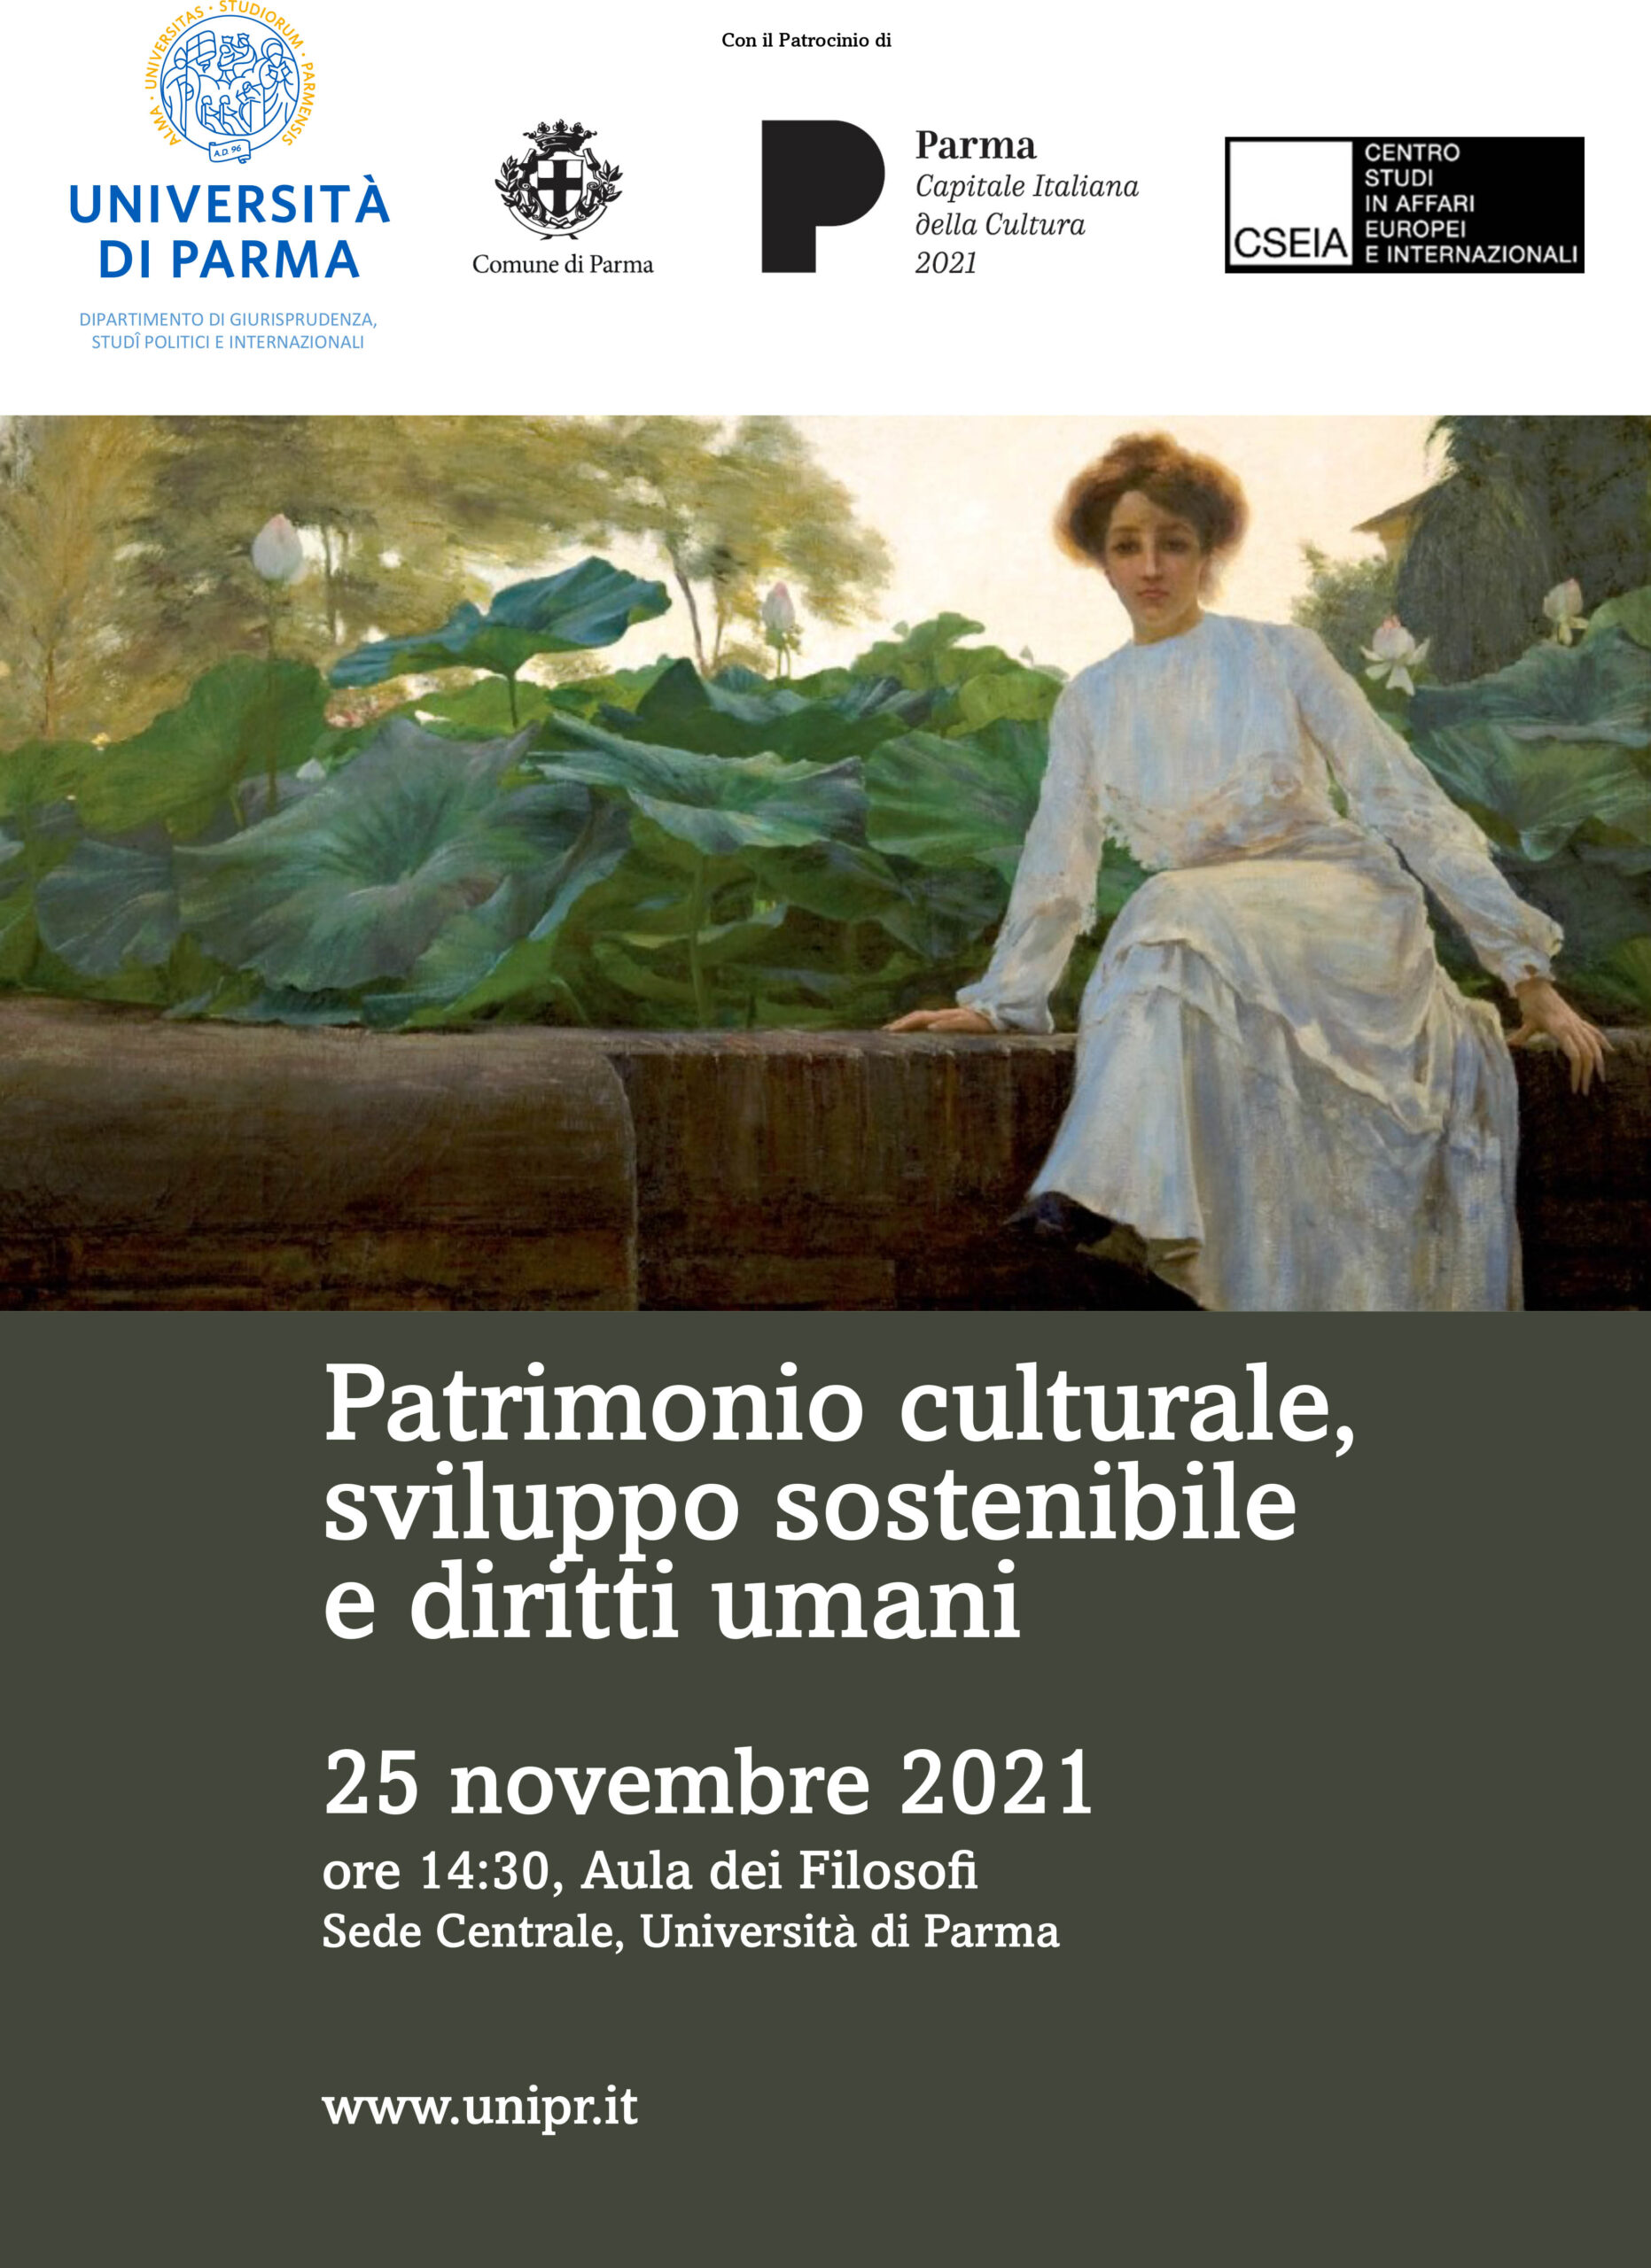 Patrimonio culturale, sviluppo sostenibile e diritti umani 25.11.2021